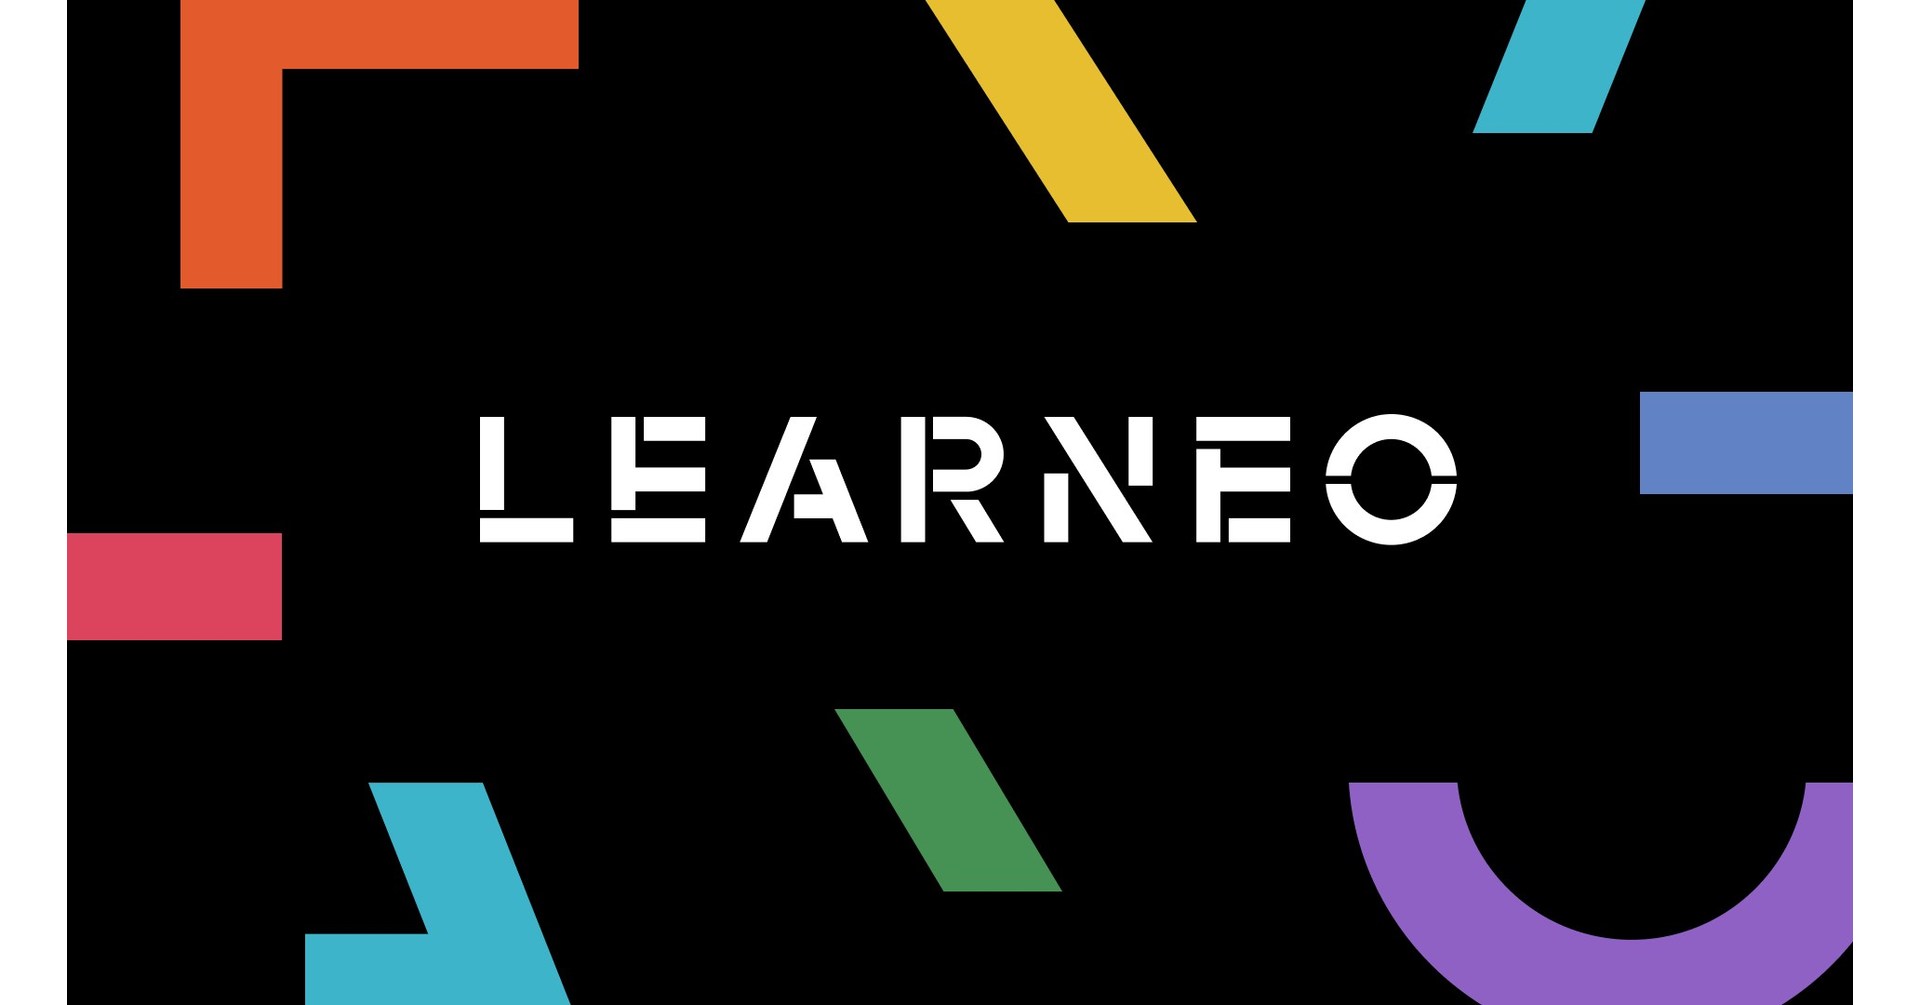 Introductie van Learneo, een merkplatform voor leren en productiviteit, gebouwd voor de zich ontwikkelende kenniseconomie